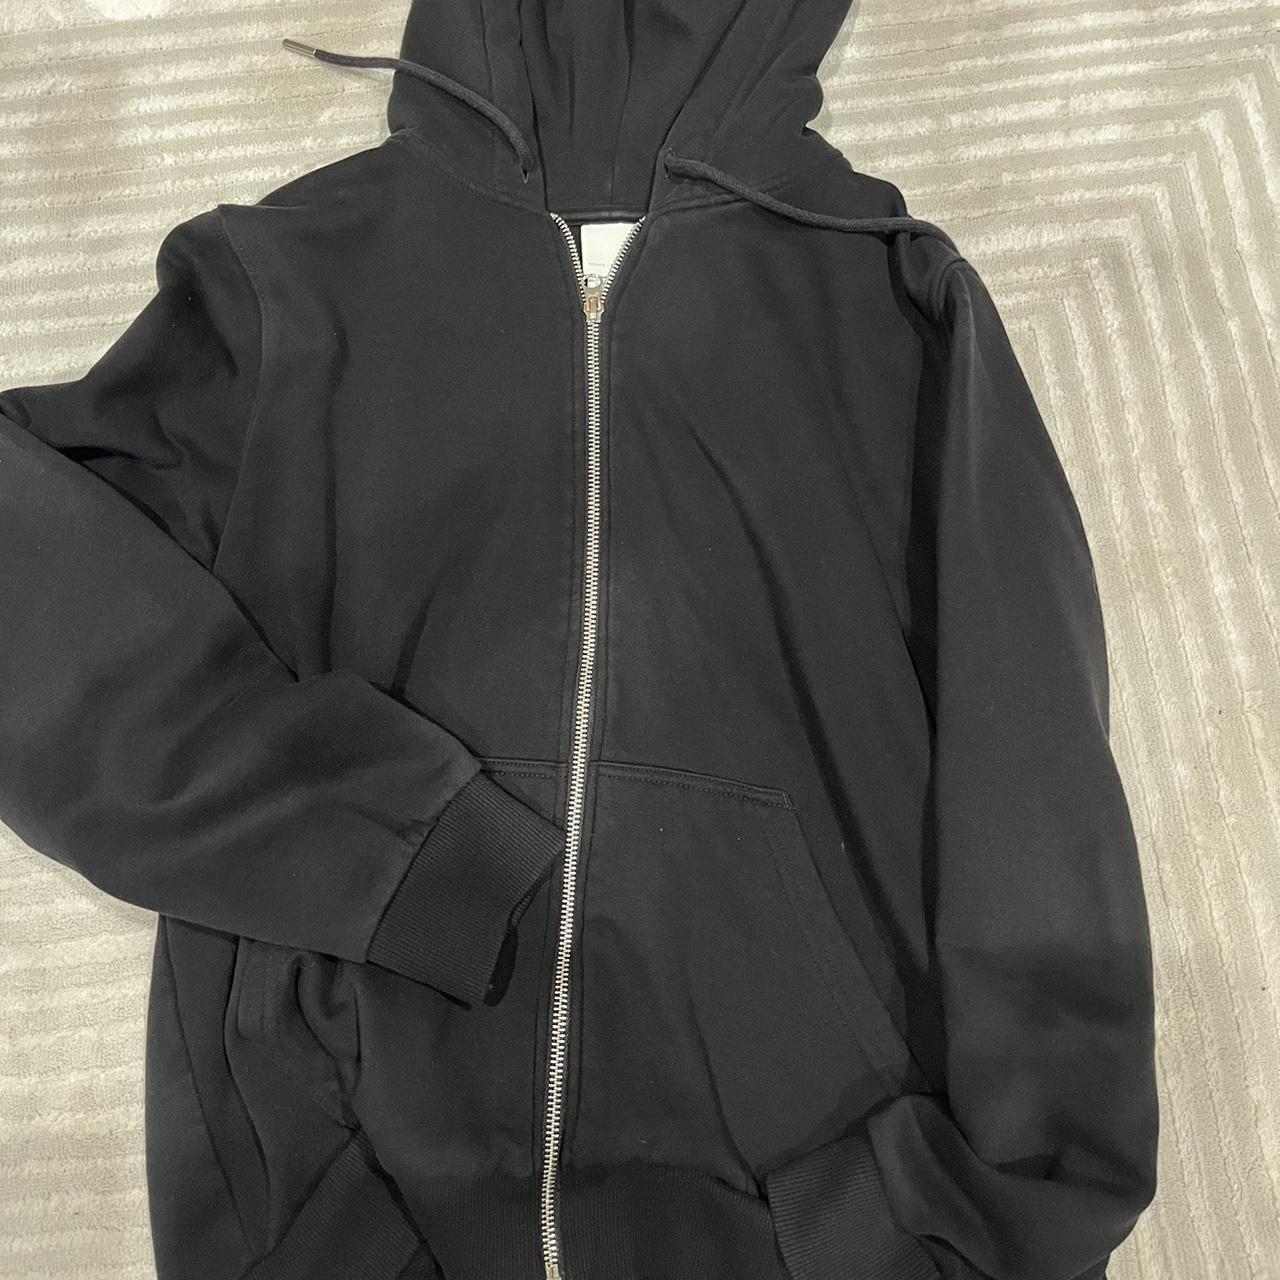 black zip up jacket! -size M -great jacket for... - Depop